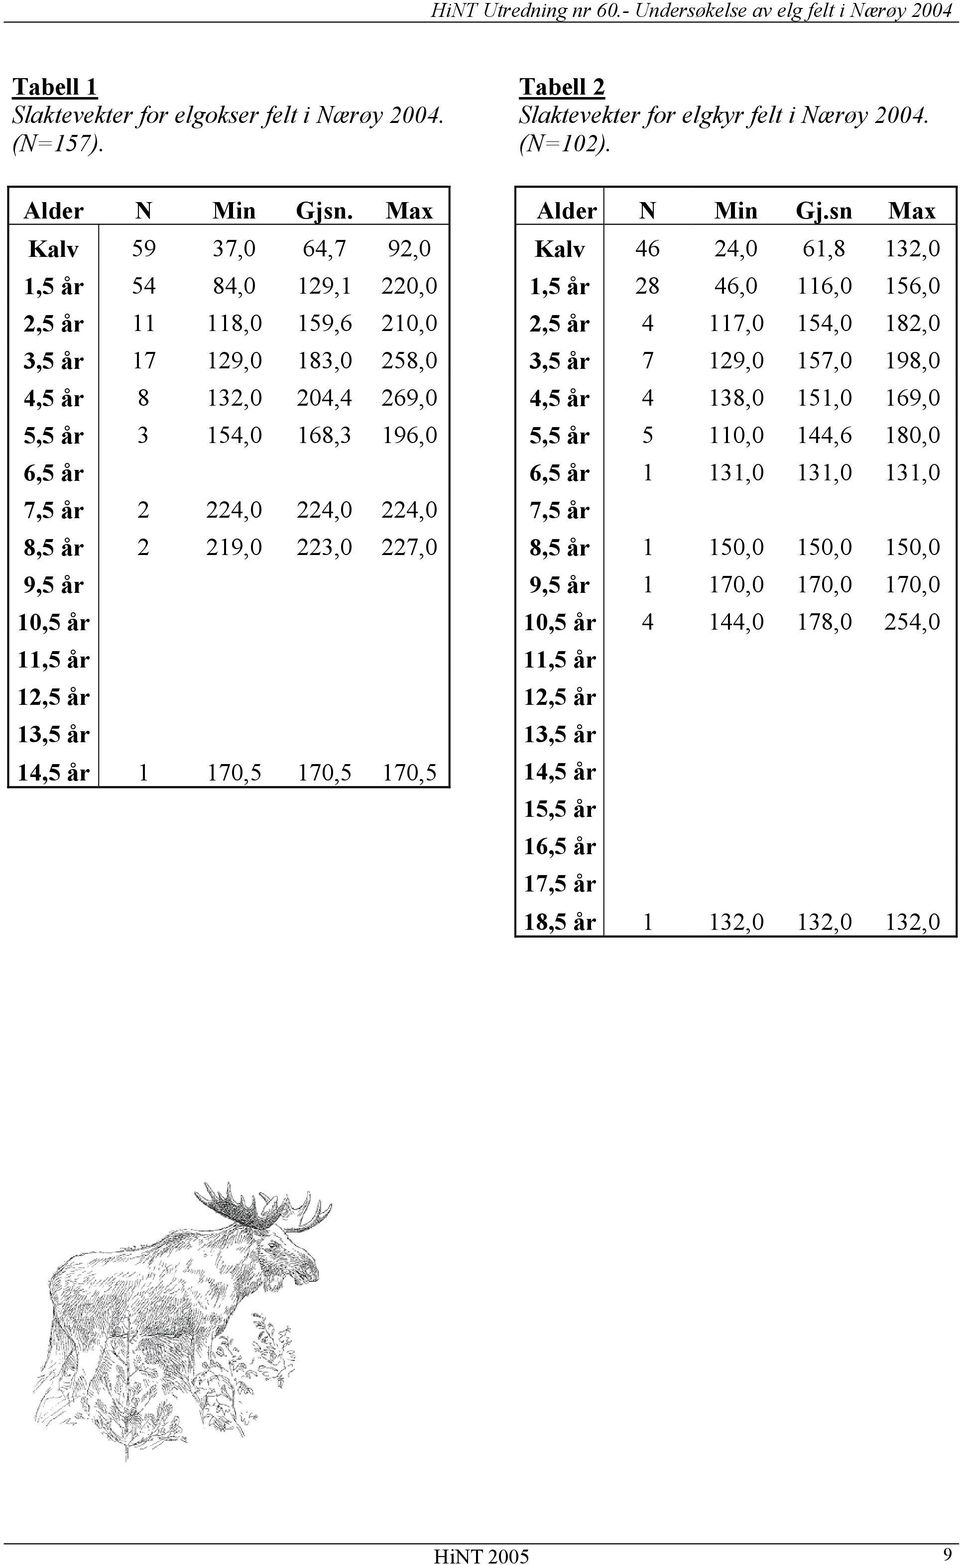 8,5 år 2 219,0 223,0 227,0 9,5 år 10,5 år 11,5 år 12,5 år 13,5 år 14,5 år 1 170,5 170,5 170,5 Tabell 2 Slaktevekter for elgkyr felt i Nærøy 2004. (N=102). Alder N Min Gj.